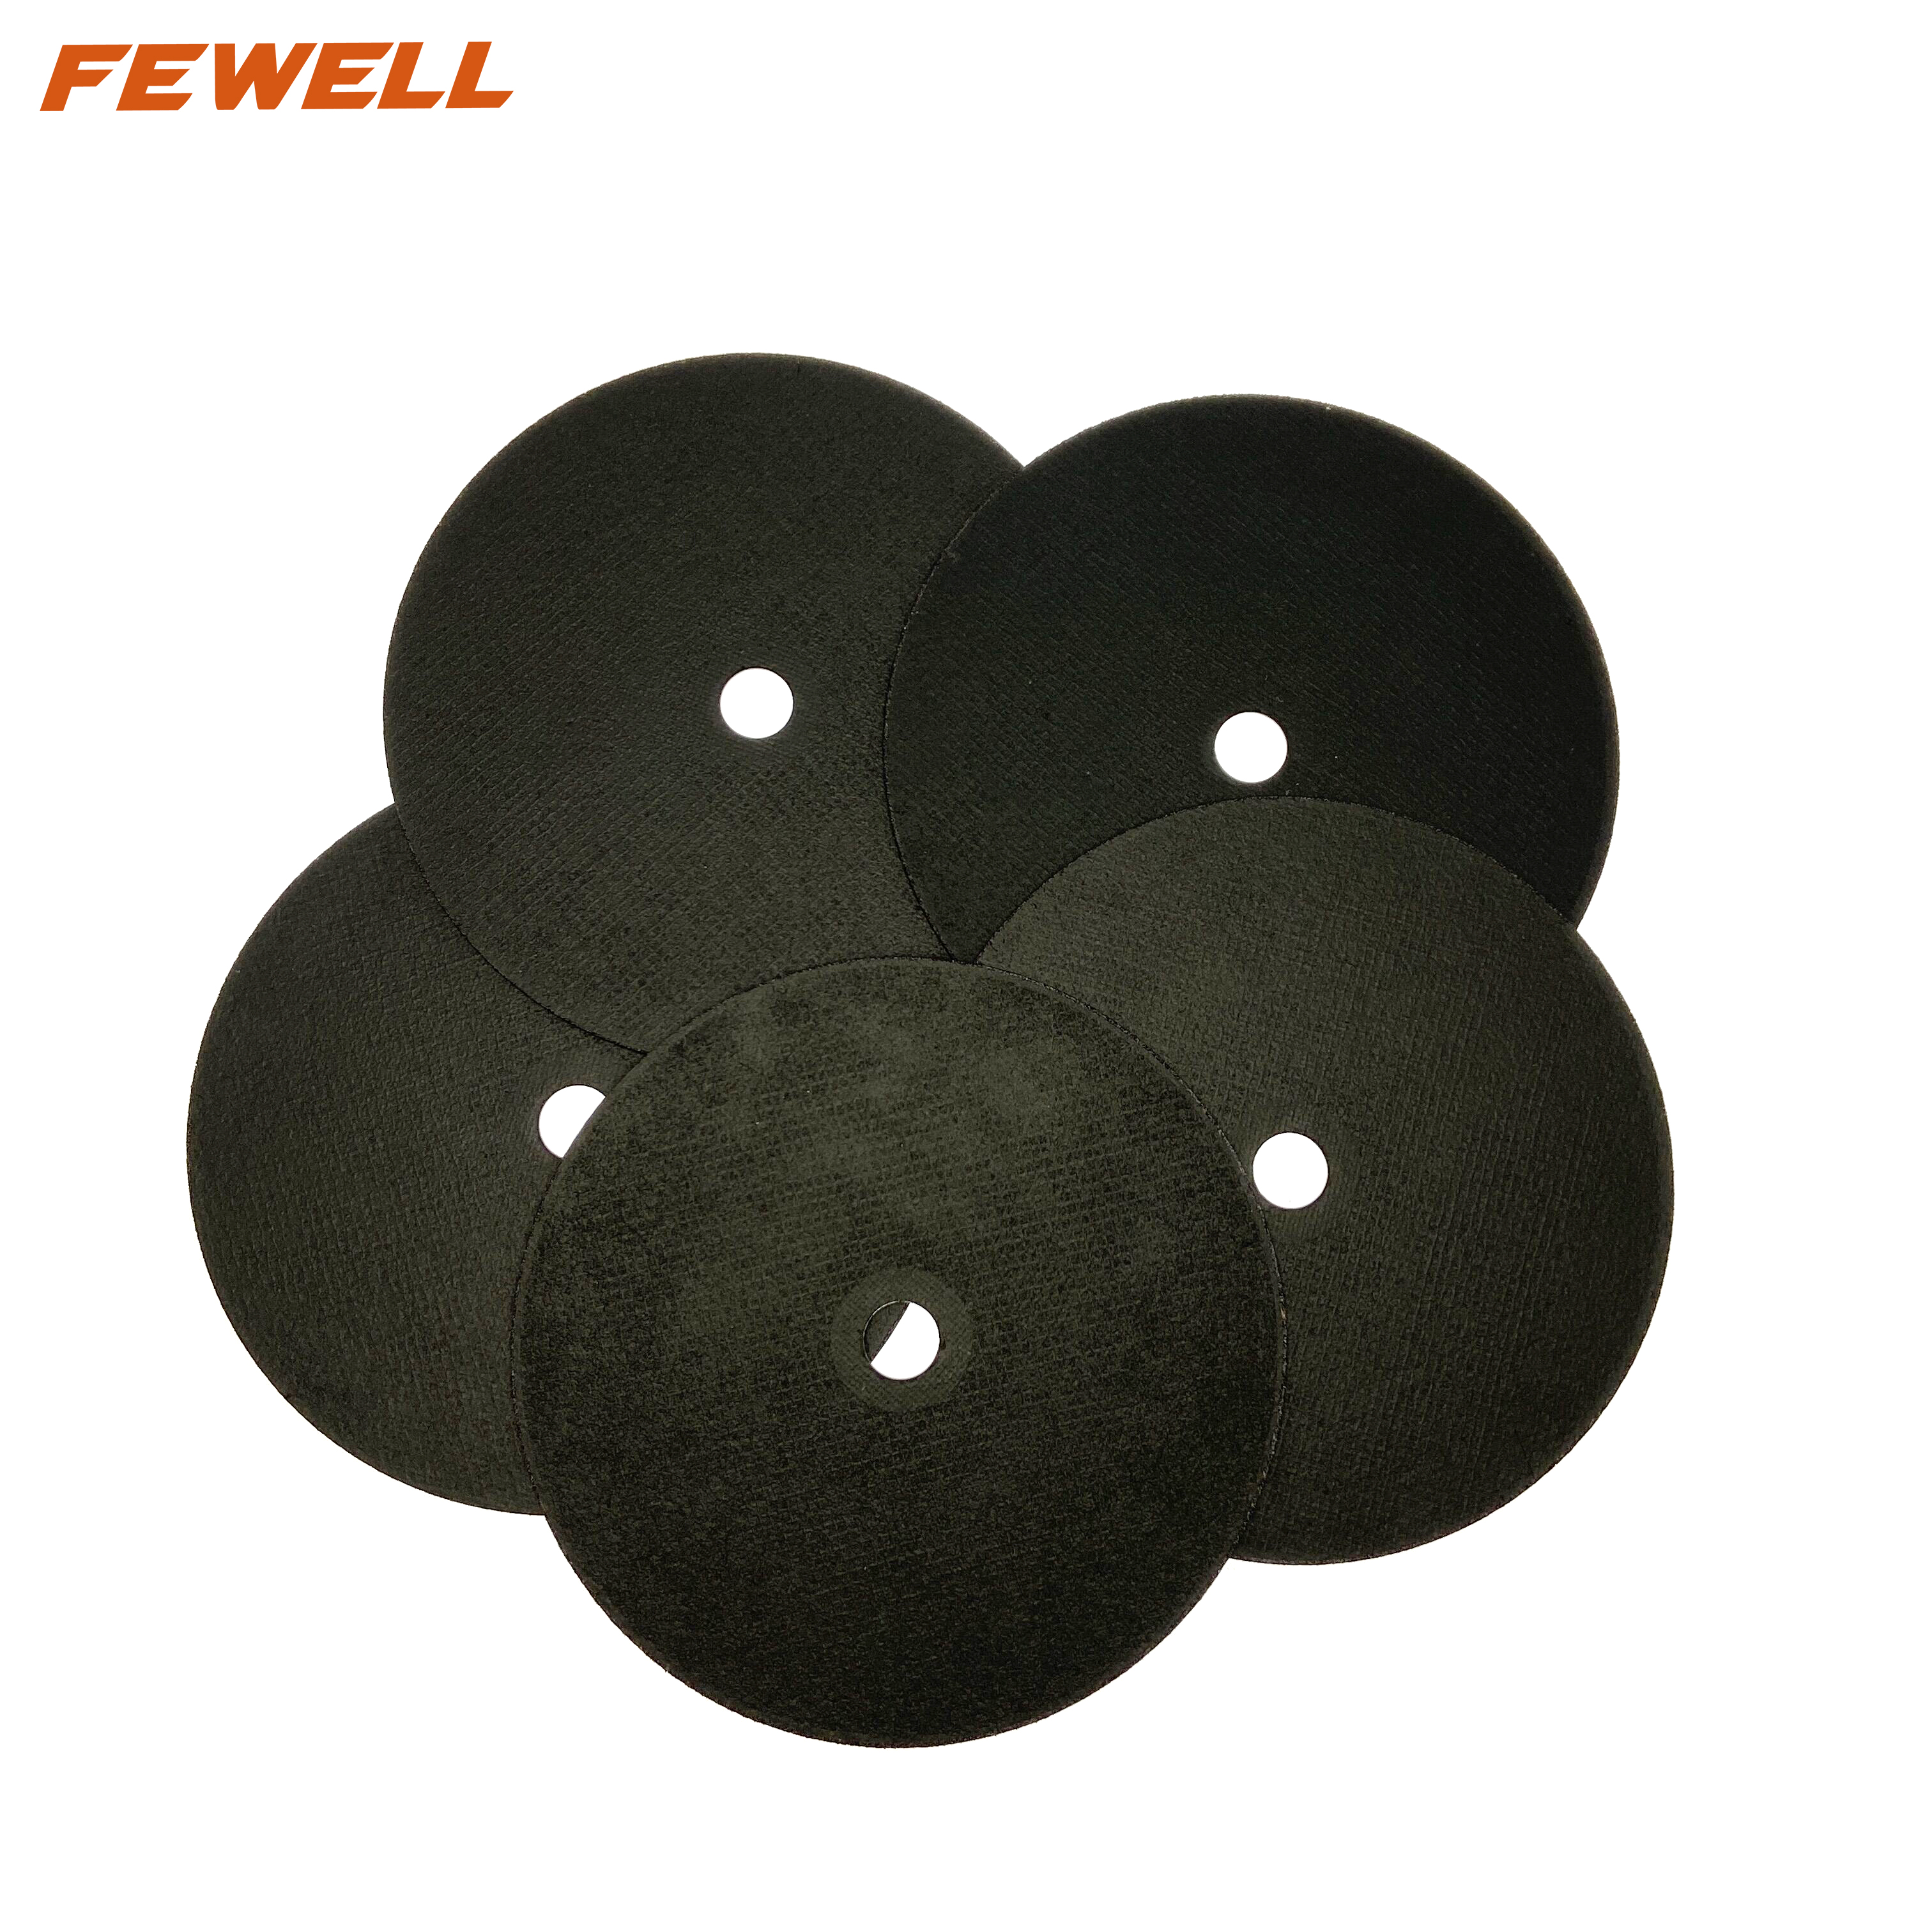 Discos abrasivos de 9 pulgadas, 230x1,9x22mm, rueda de corte para cortar metal y acero inoxidable